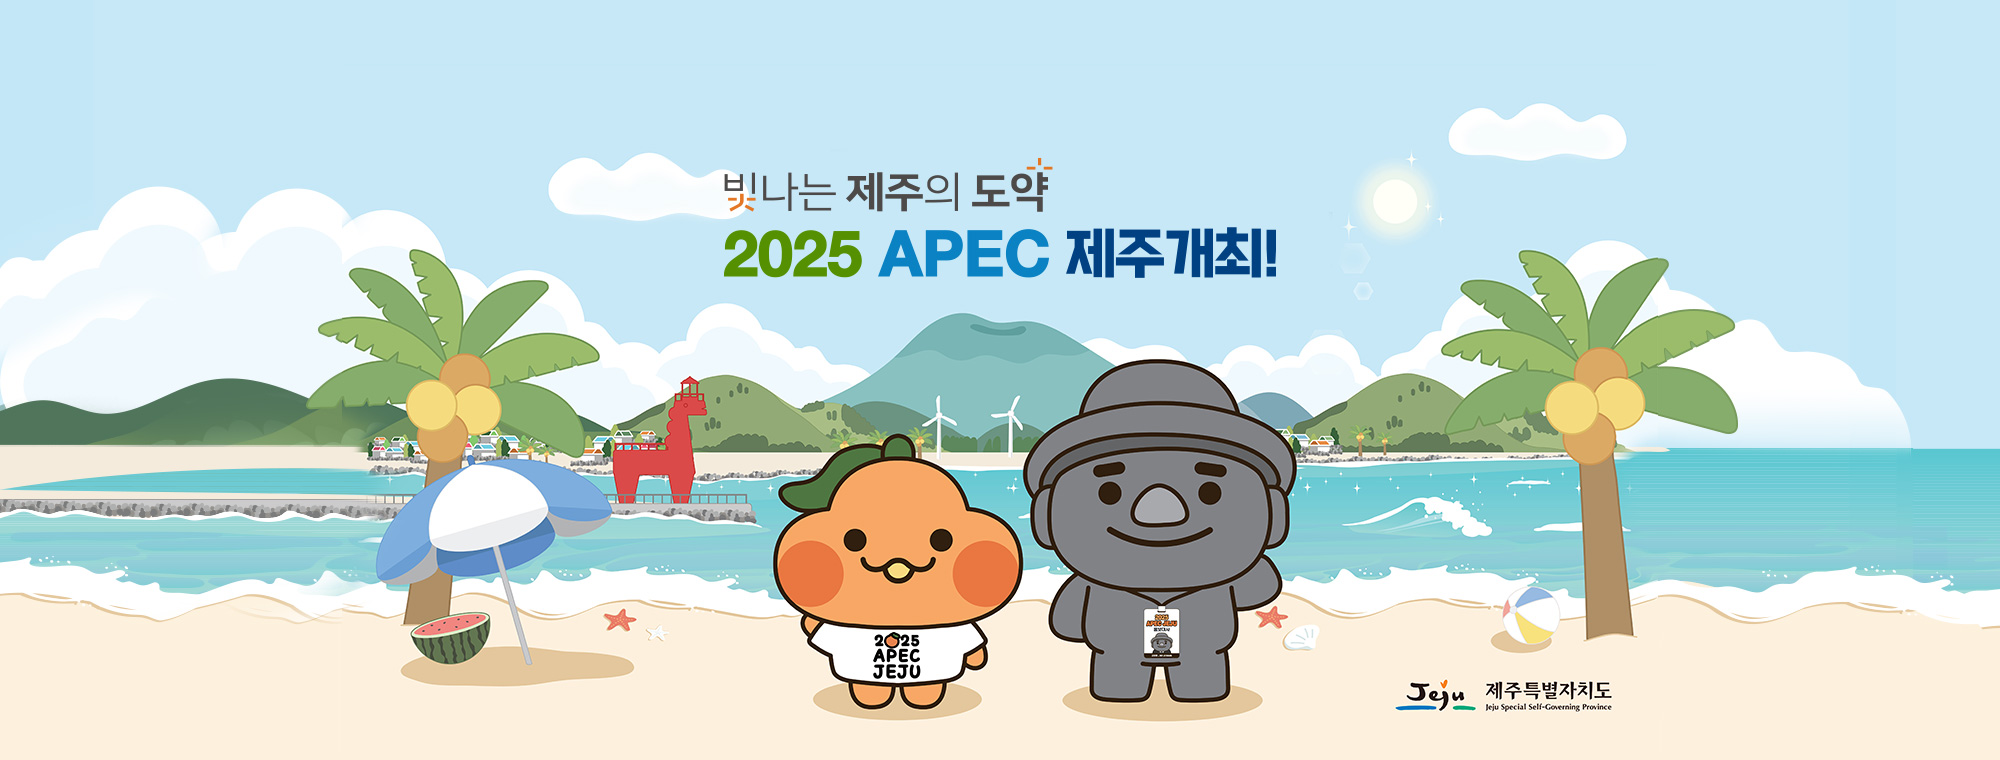 빛나는 제주의 도약. 2025 APEC JEJU 제주개최! 제주특별자치도